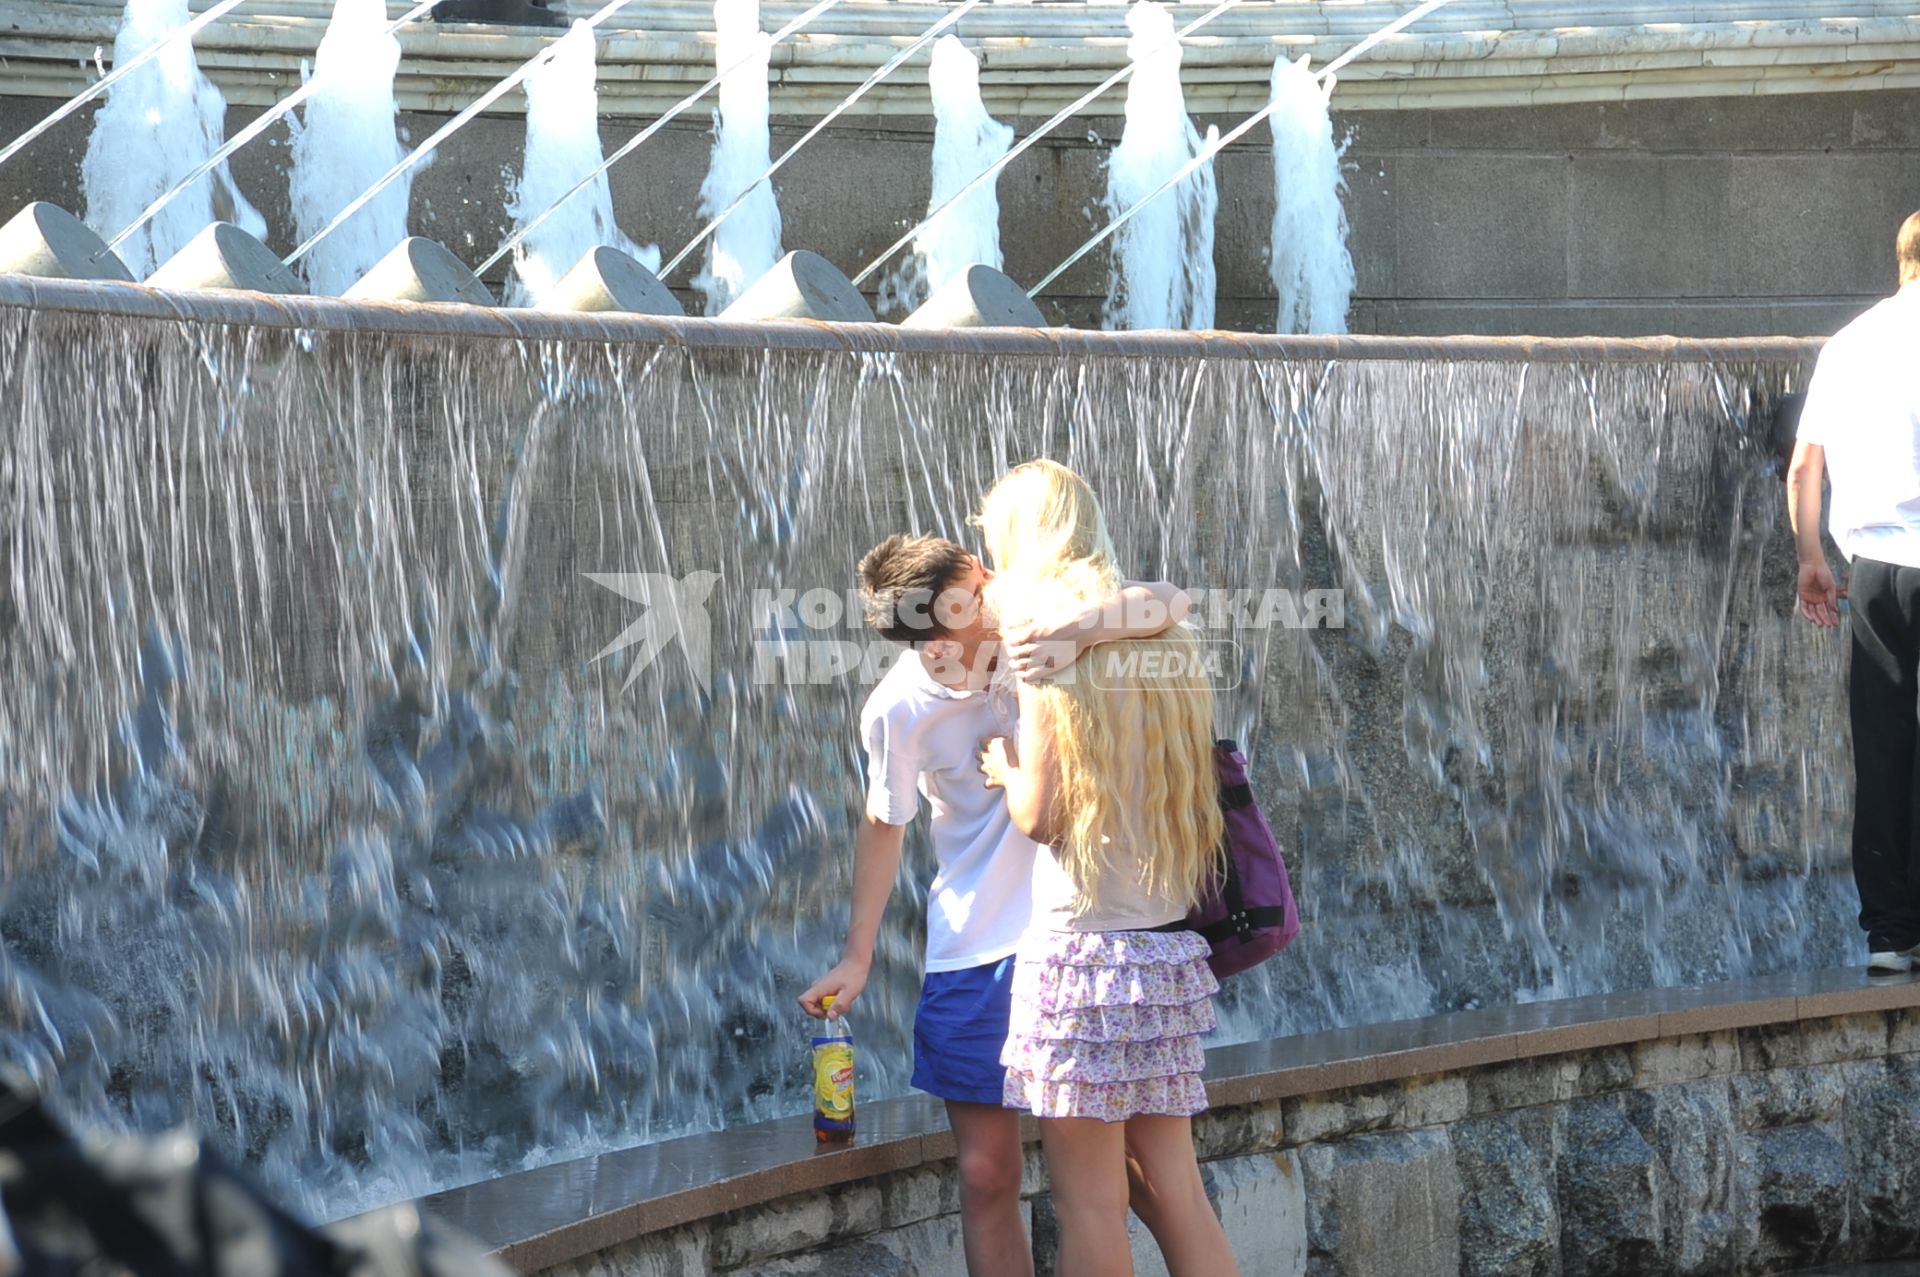 Молодой человек у фонтана обнимает и целует девушку. 2 июня 2011 года.